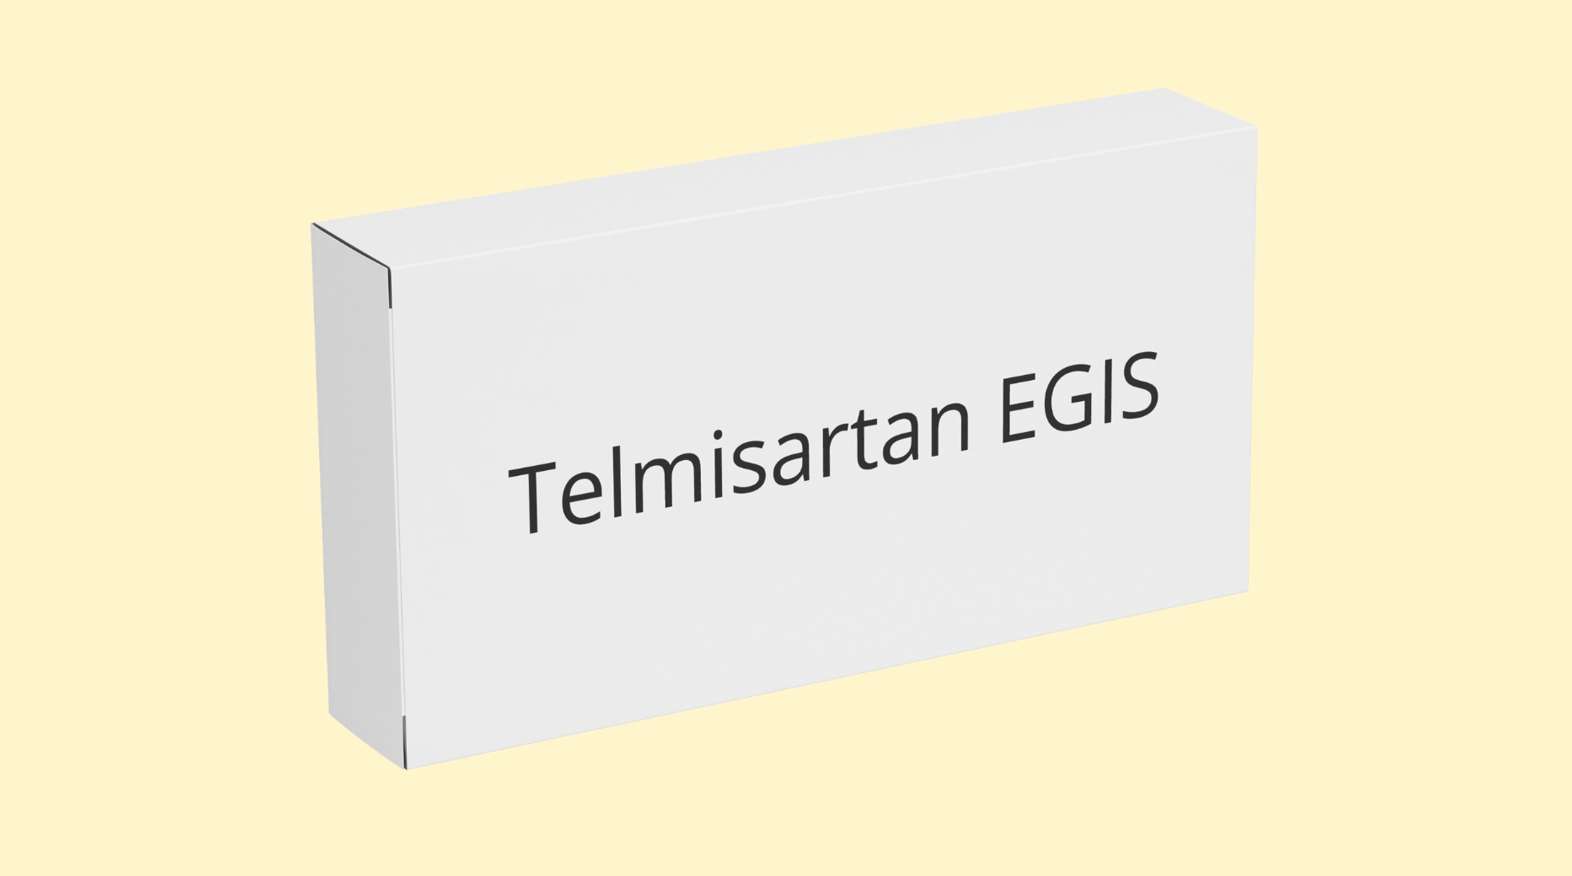 Telmisartan EGIS E recepta   recepta online z konsultacją | cena  dawkowanie  przeciwwskazania